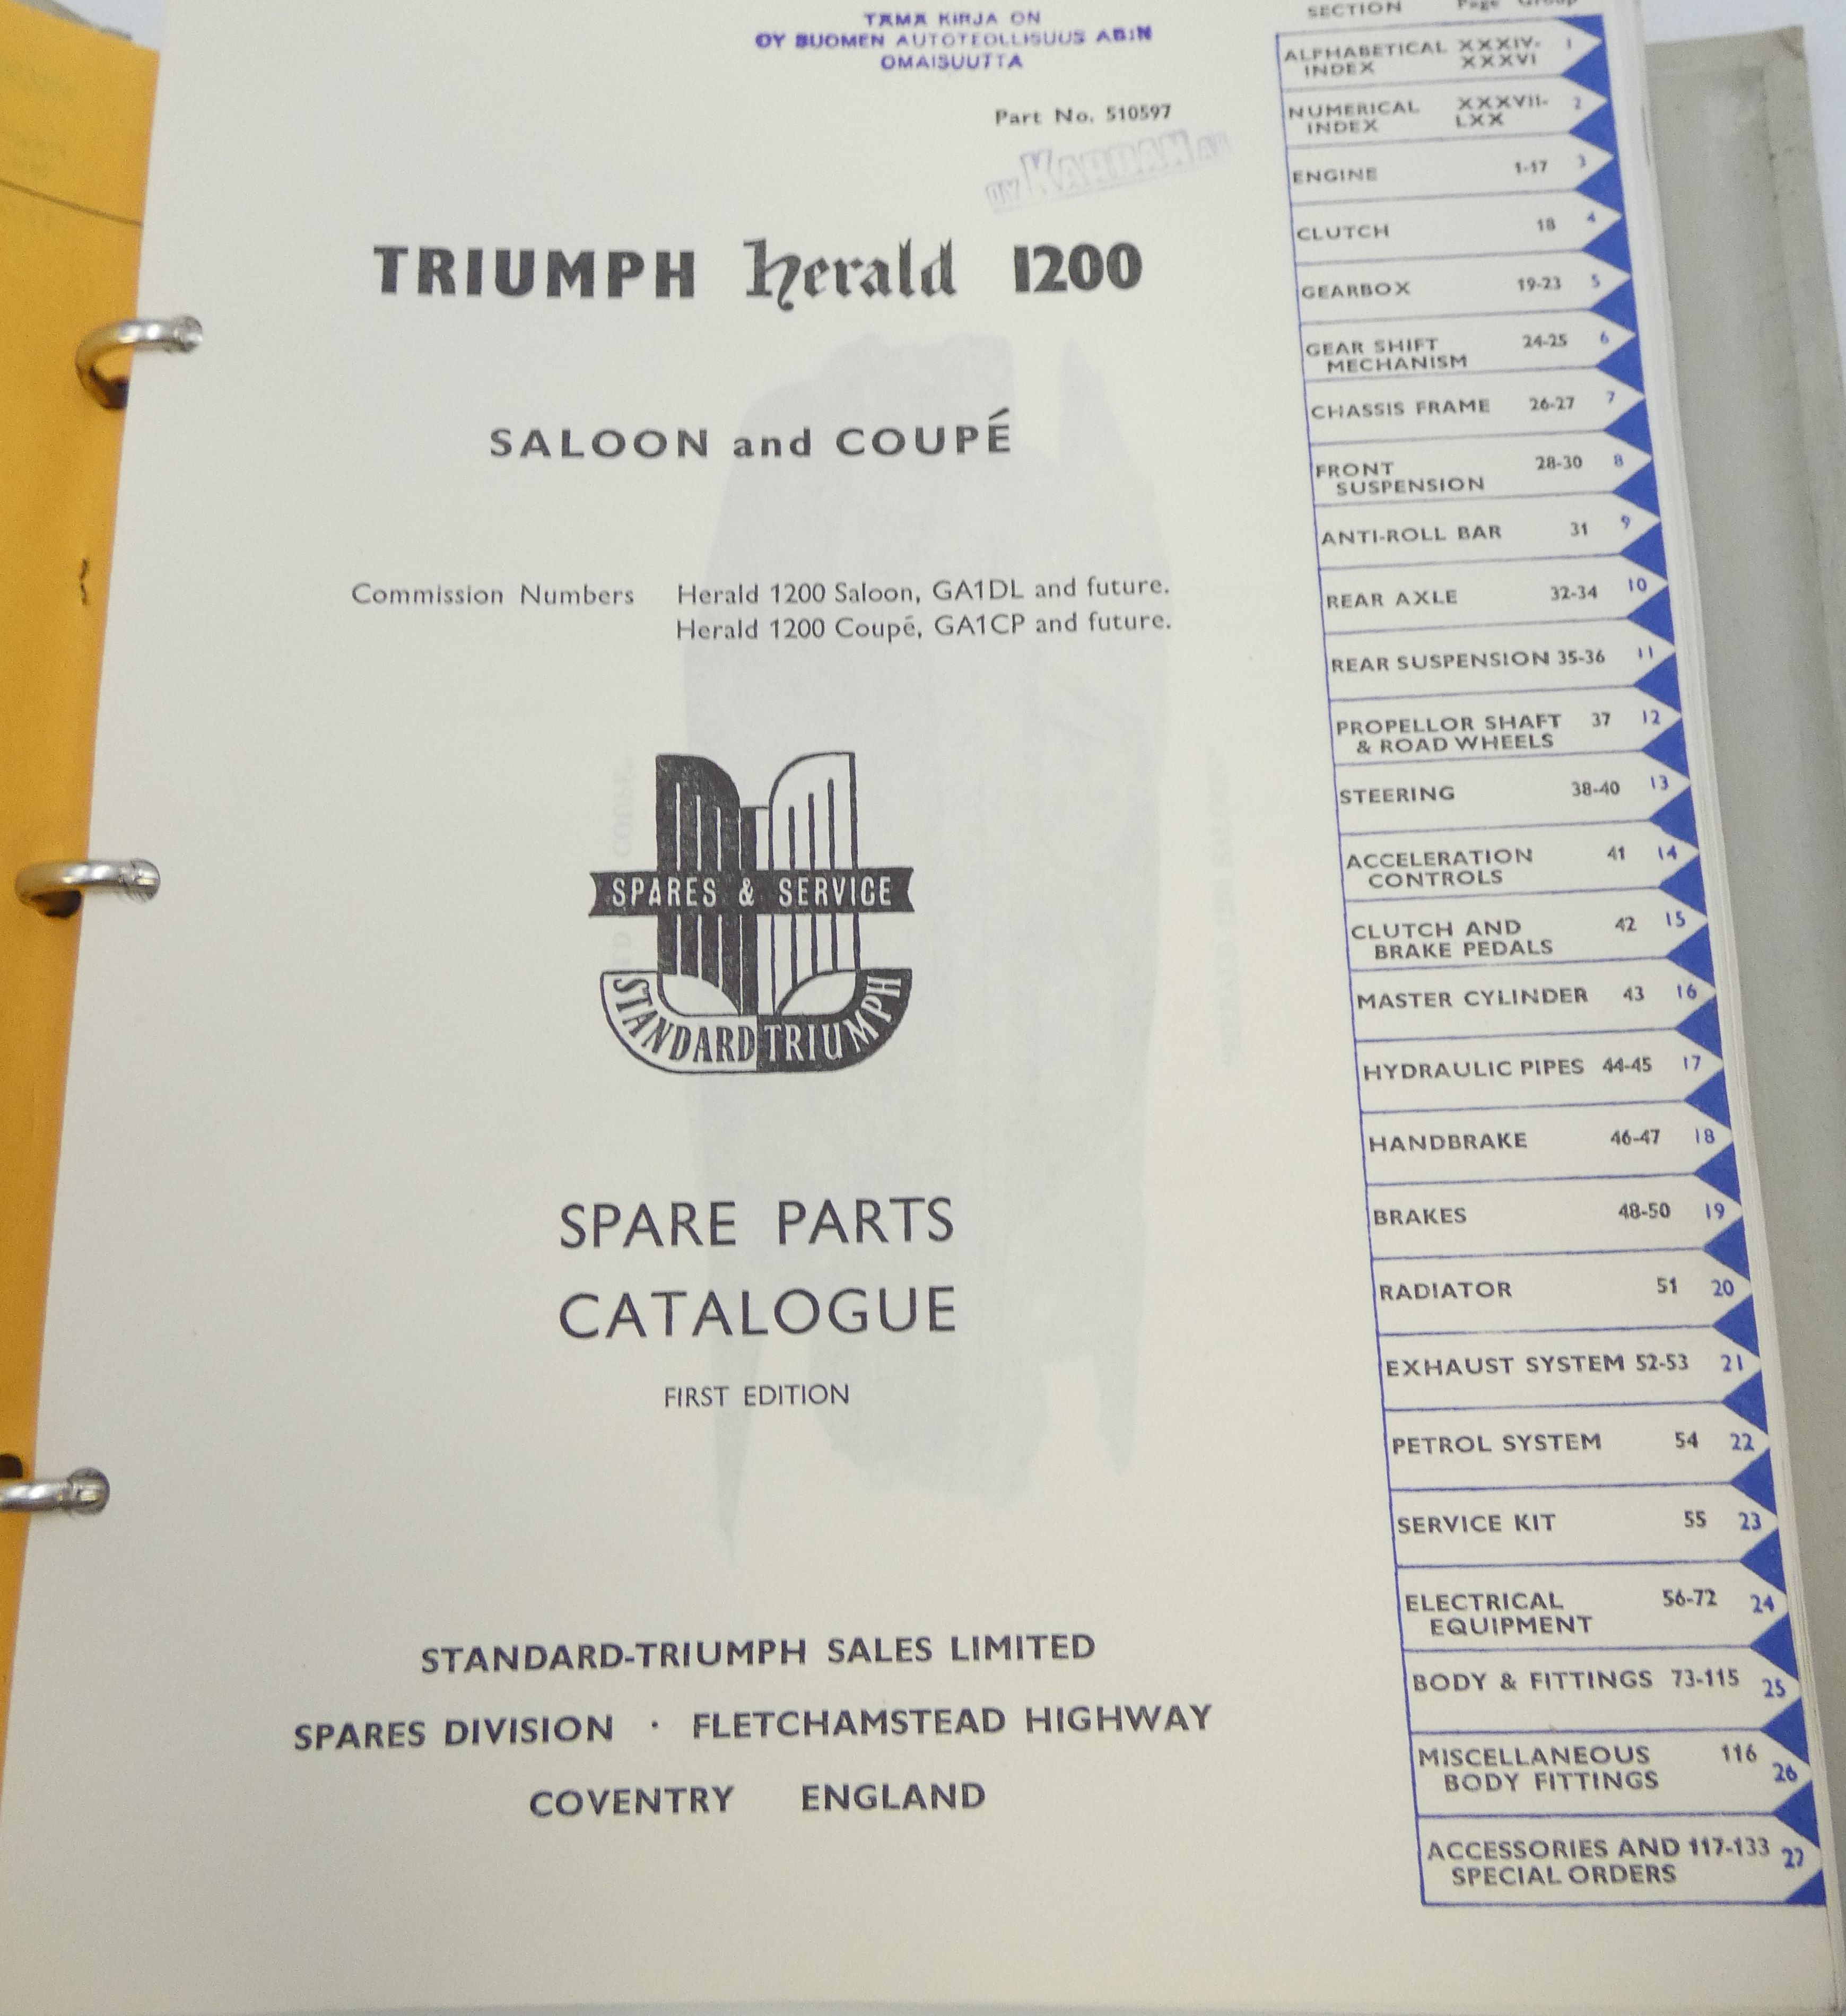 Triumph Herald 1200 Saloon & Coupé spare parts catalogue